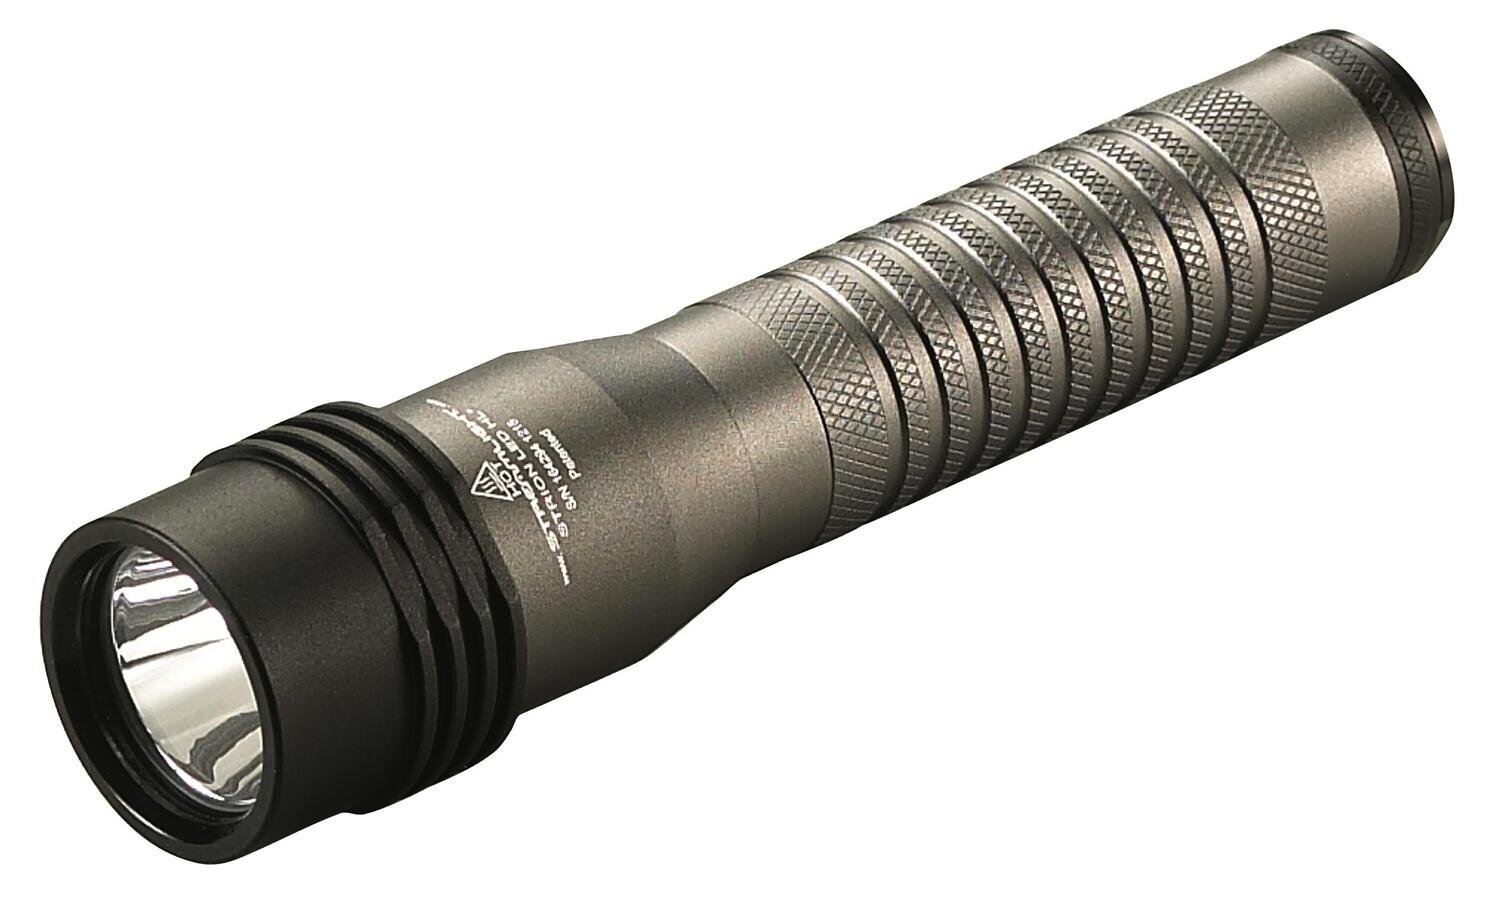 STL74391 - Strion LED HL® Flashlight with Piggyback Charger